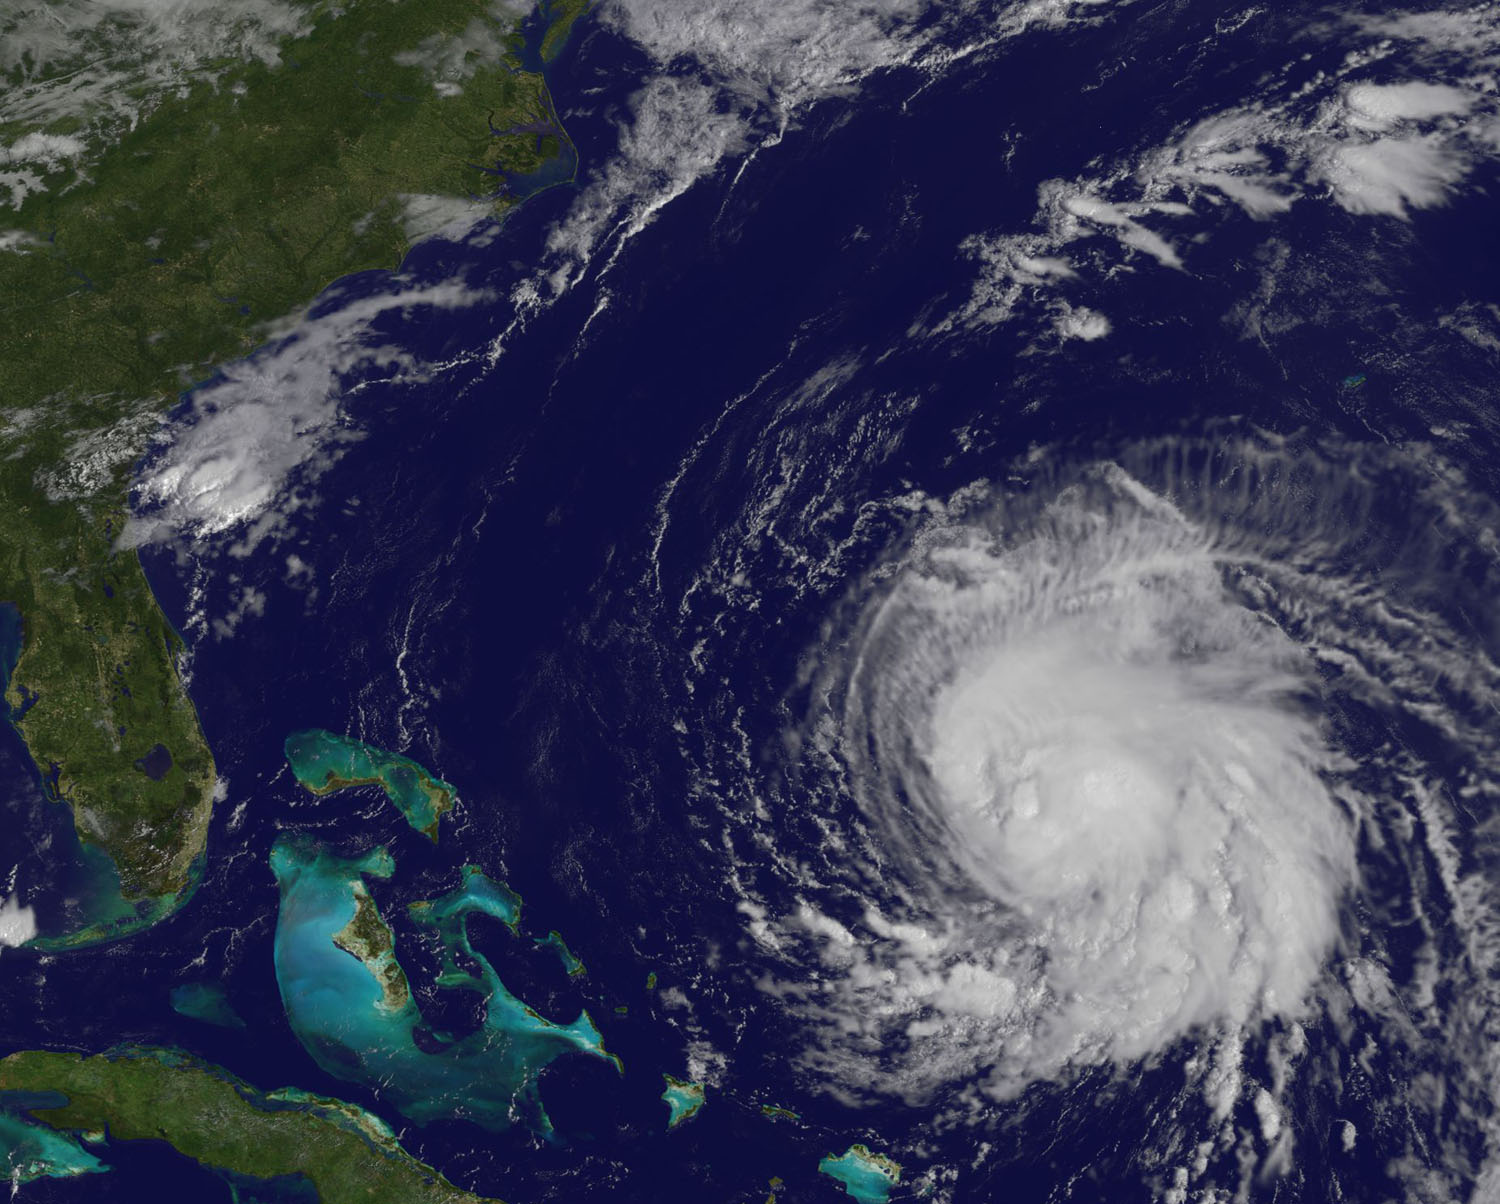 Satellite image of Jose, a swirling cloud mass near the Bahamas.